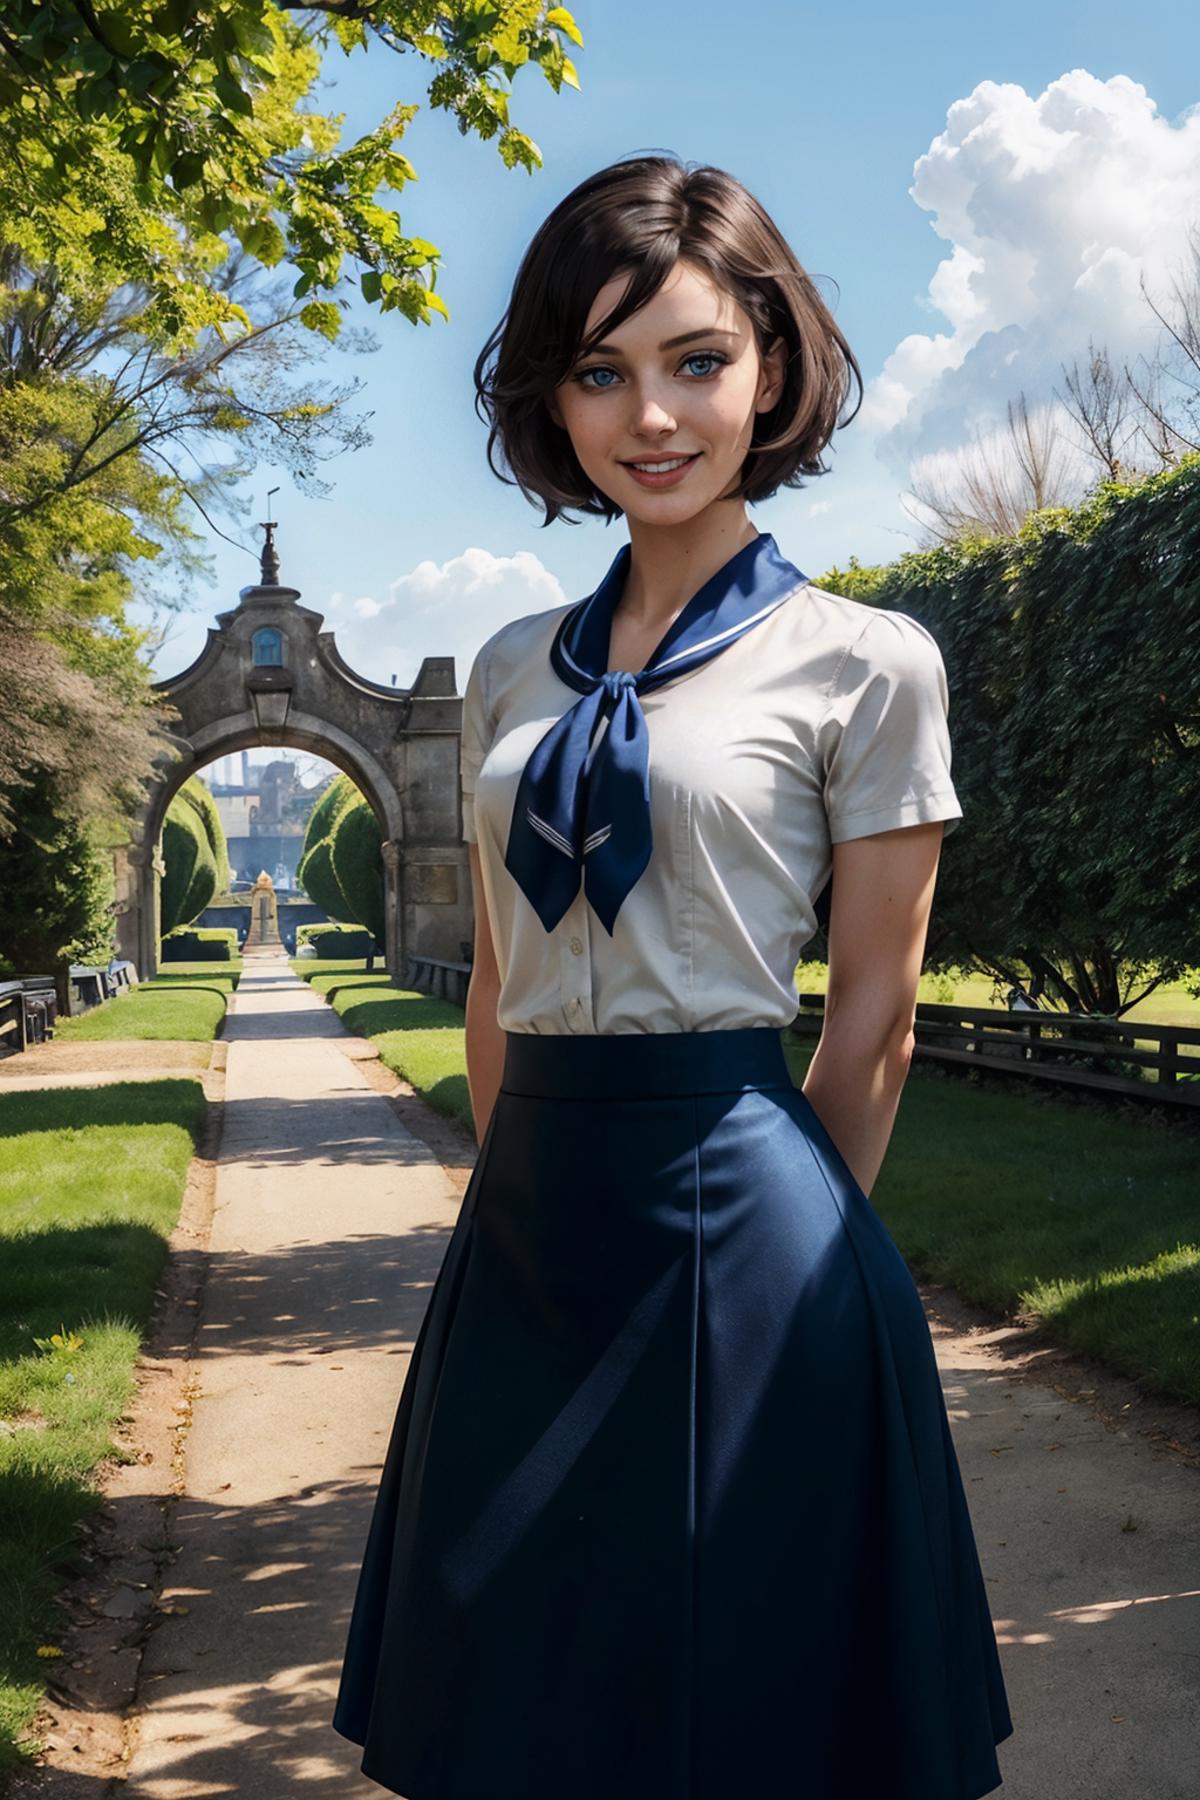 Elizabeth from BioShock Infinite image by wikkitikki